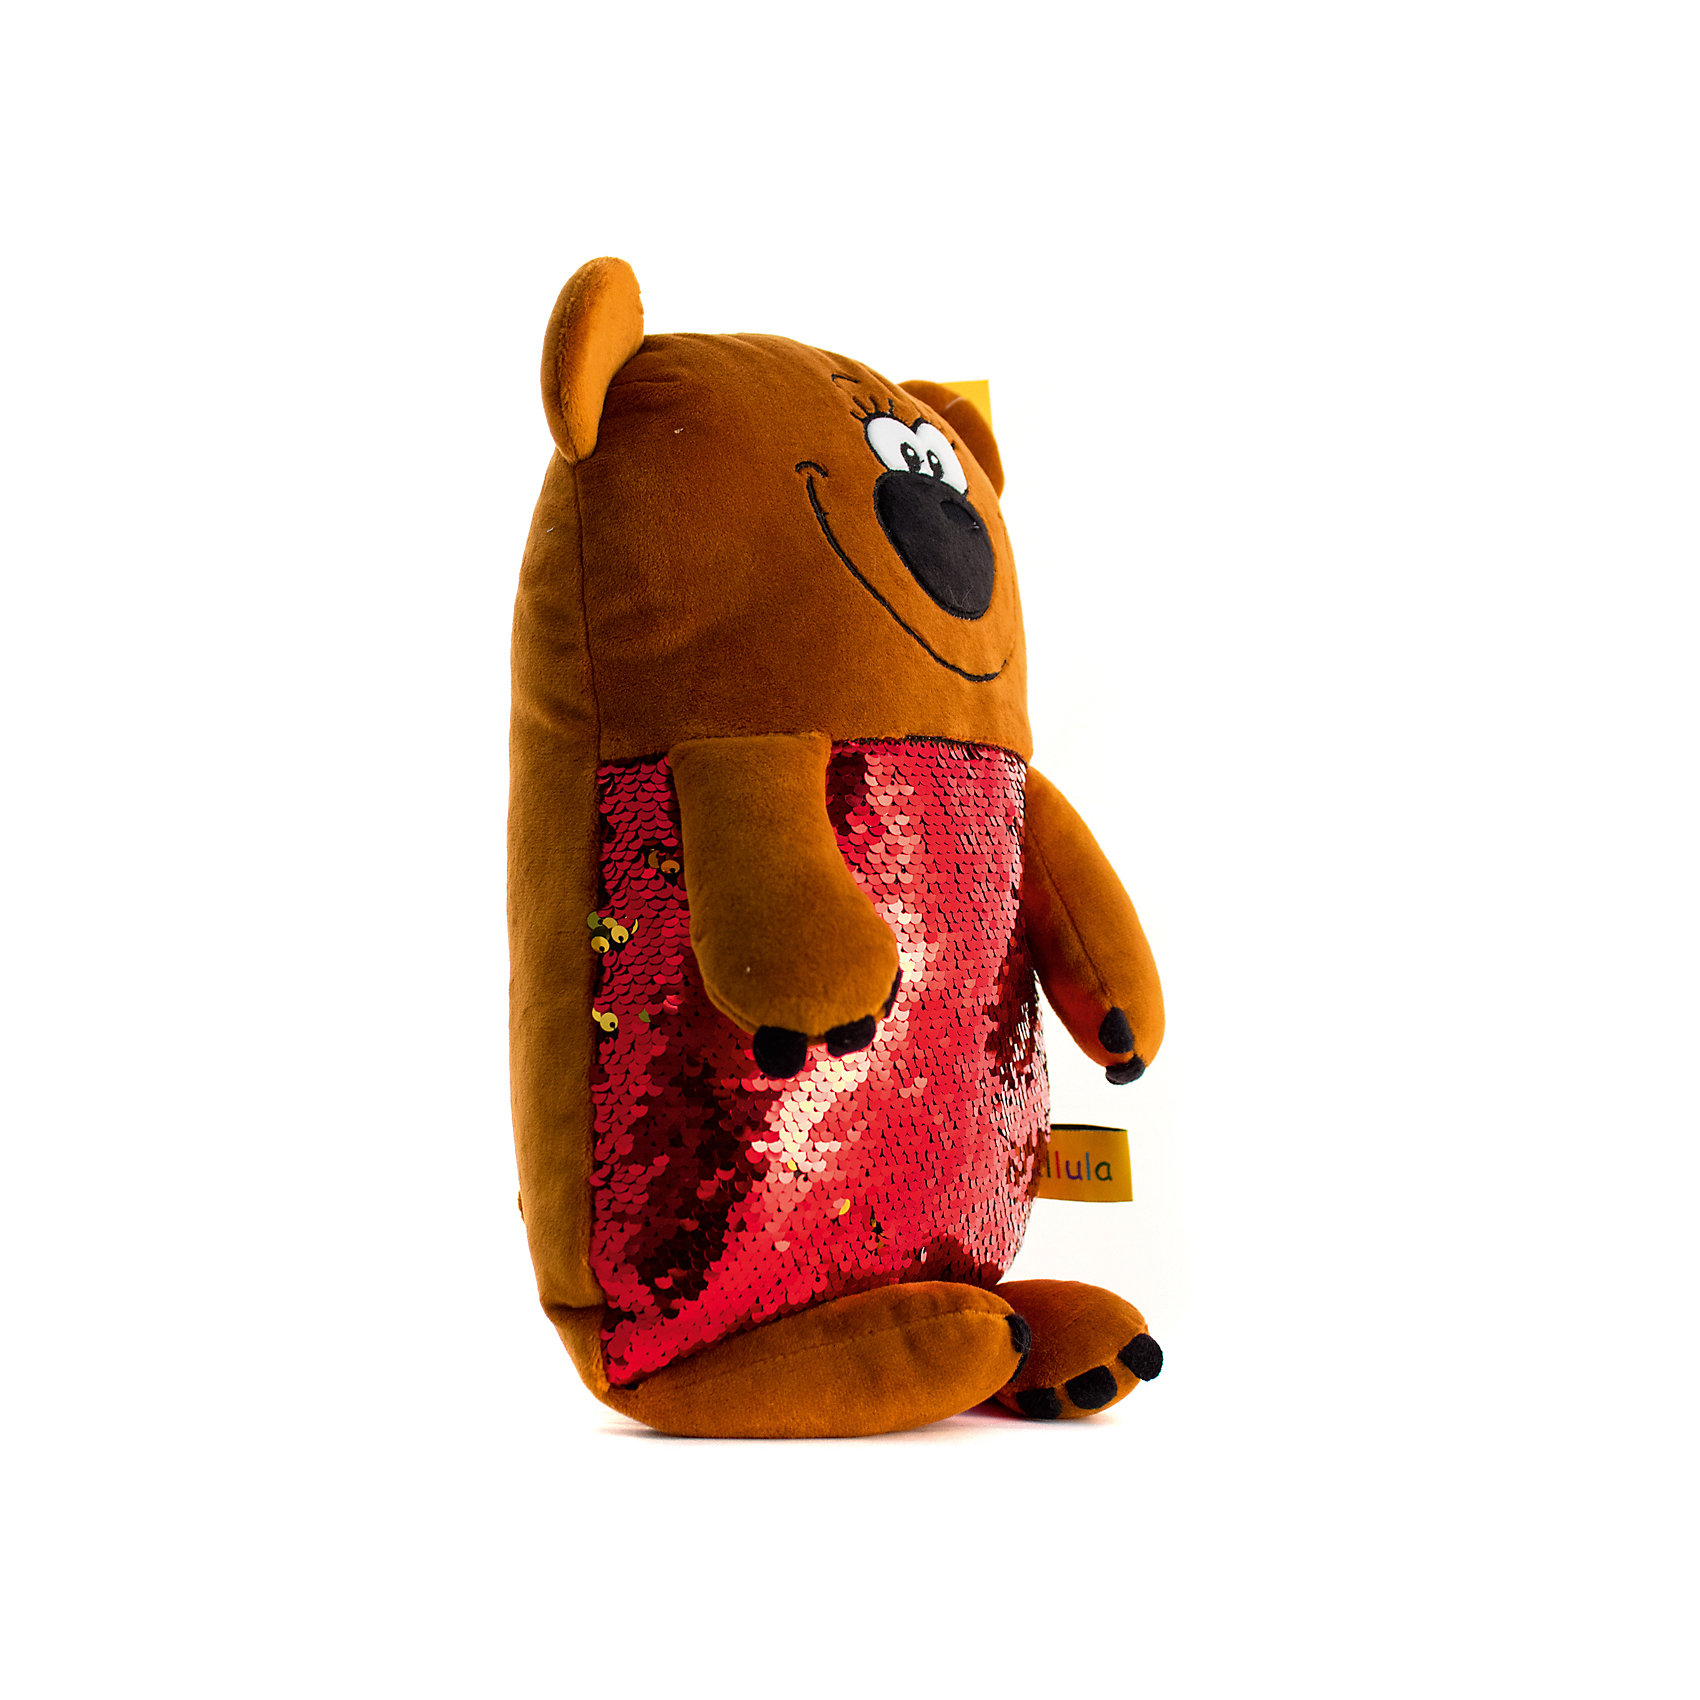 Мягкая игрушка Медведь, 45 см Tallula 13788041